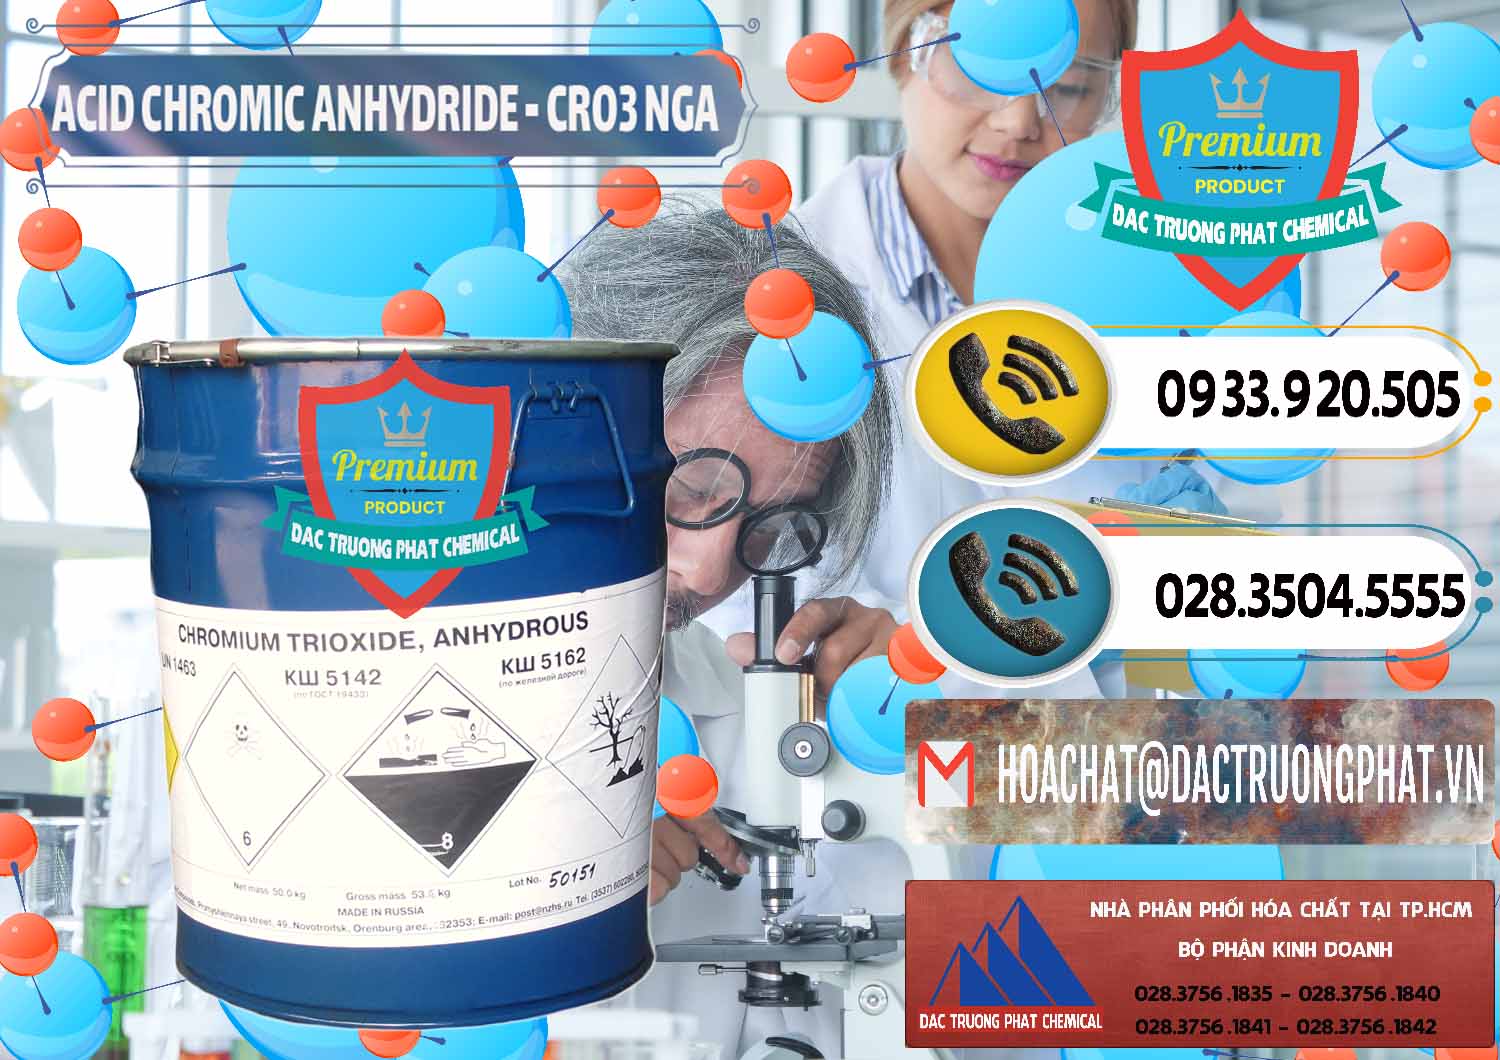 Nơi chuyên phân phối ( bán ) Acid Chromic Anhydride - Cromic CRO3 Nga Russia - 0006 - Công ty chuyên cung cấp và kinh doanh hóa chất tại TP.HCM - hoachatdetnhuom.vn